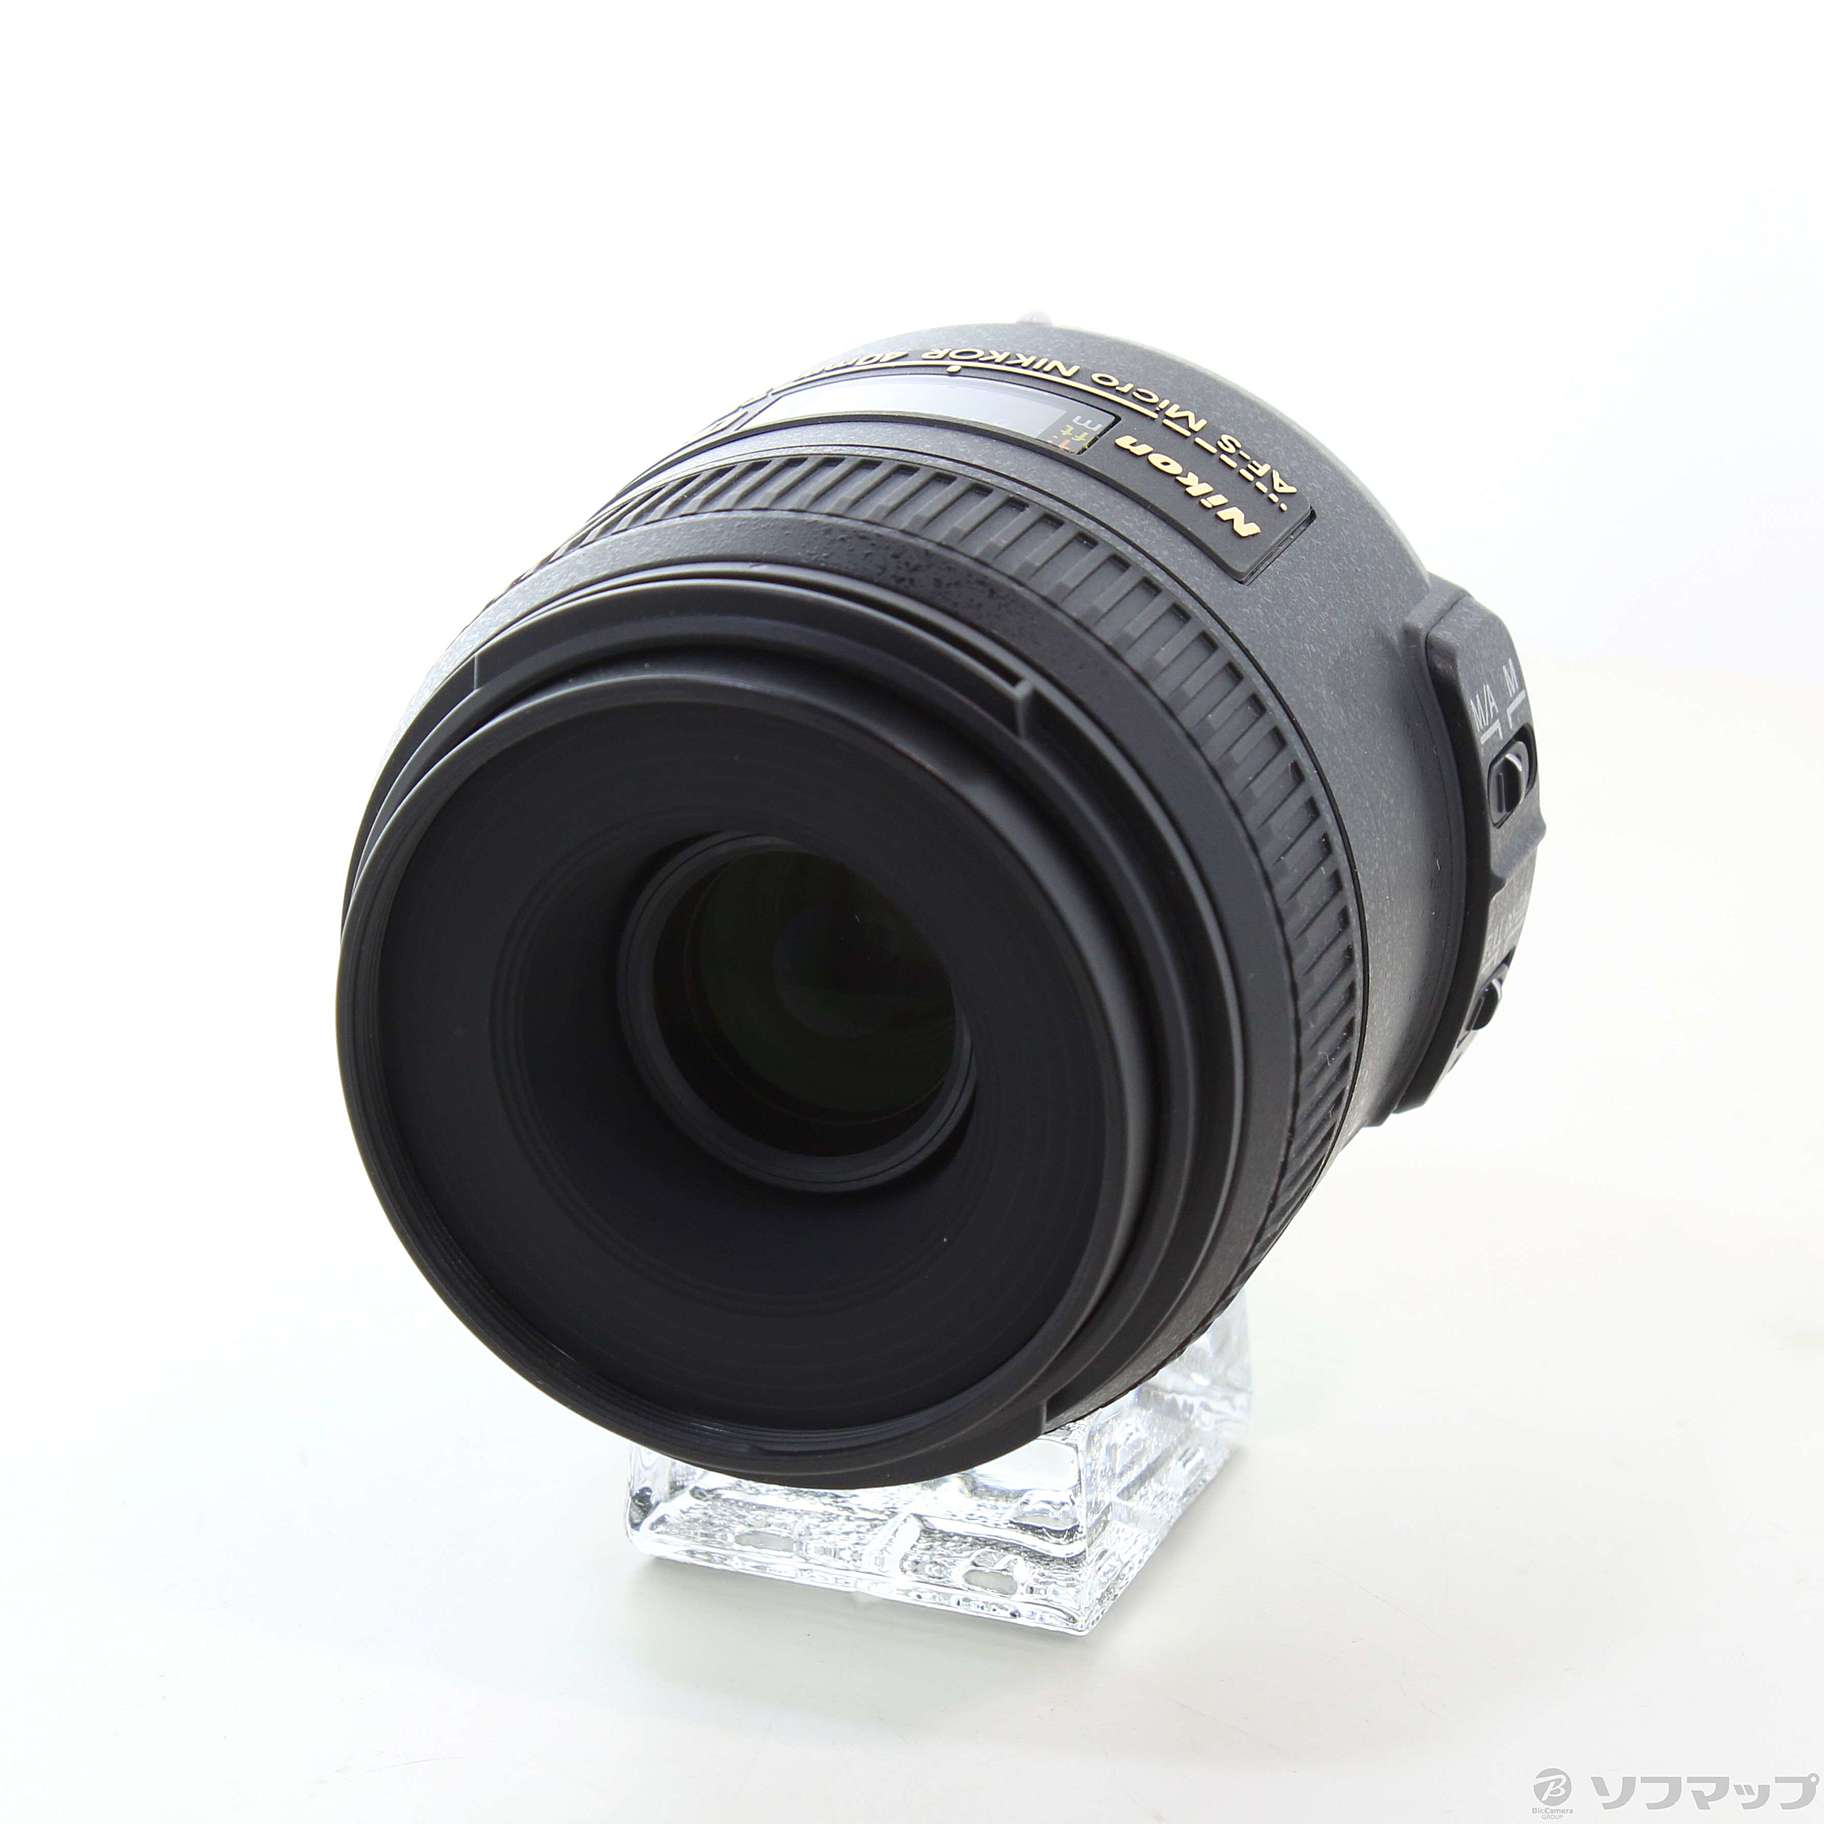 NikonAF-S DX Micro NIKKOR 40mm f/2.8G